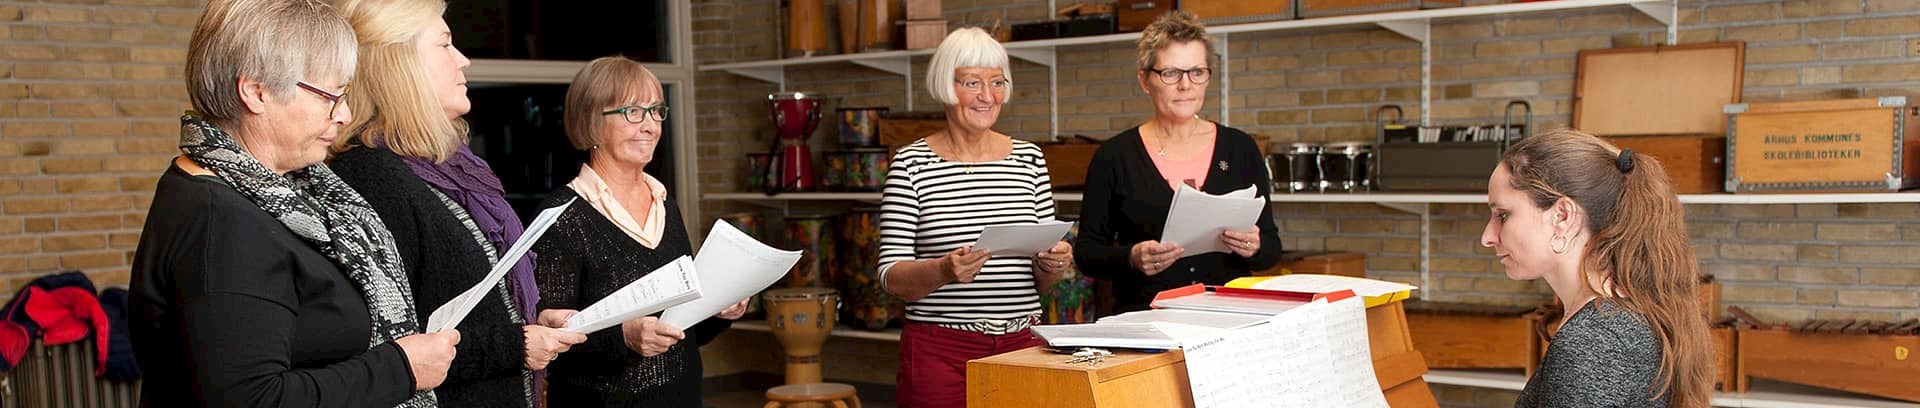 Sangundervisningstime ved FOF Aarhus underviser Birgitte Mortensen